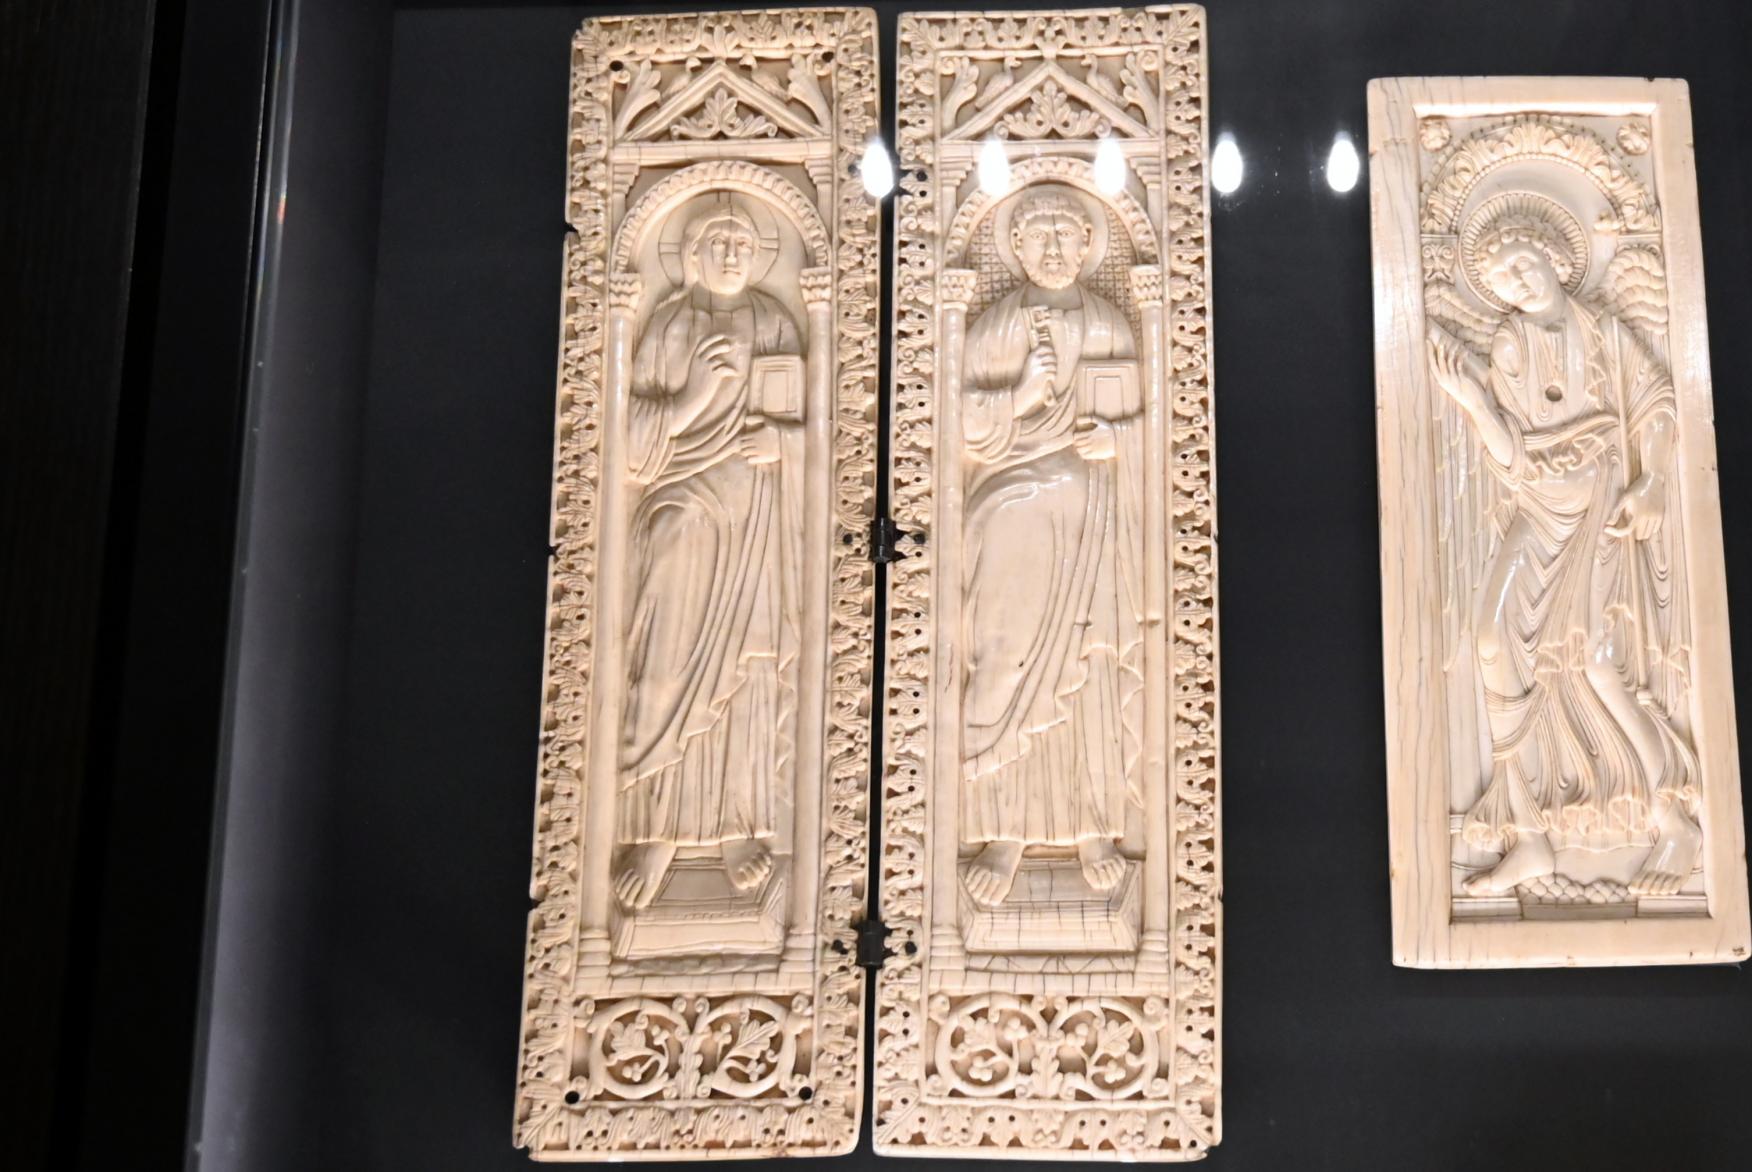 Diptychon mit Christus und Petrus, Darmstadt, Hessisches Landesmuseum, Kirchliche Schatzkammer, um 900